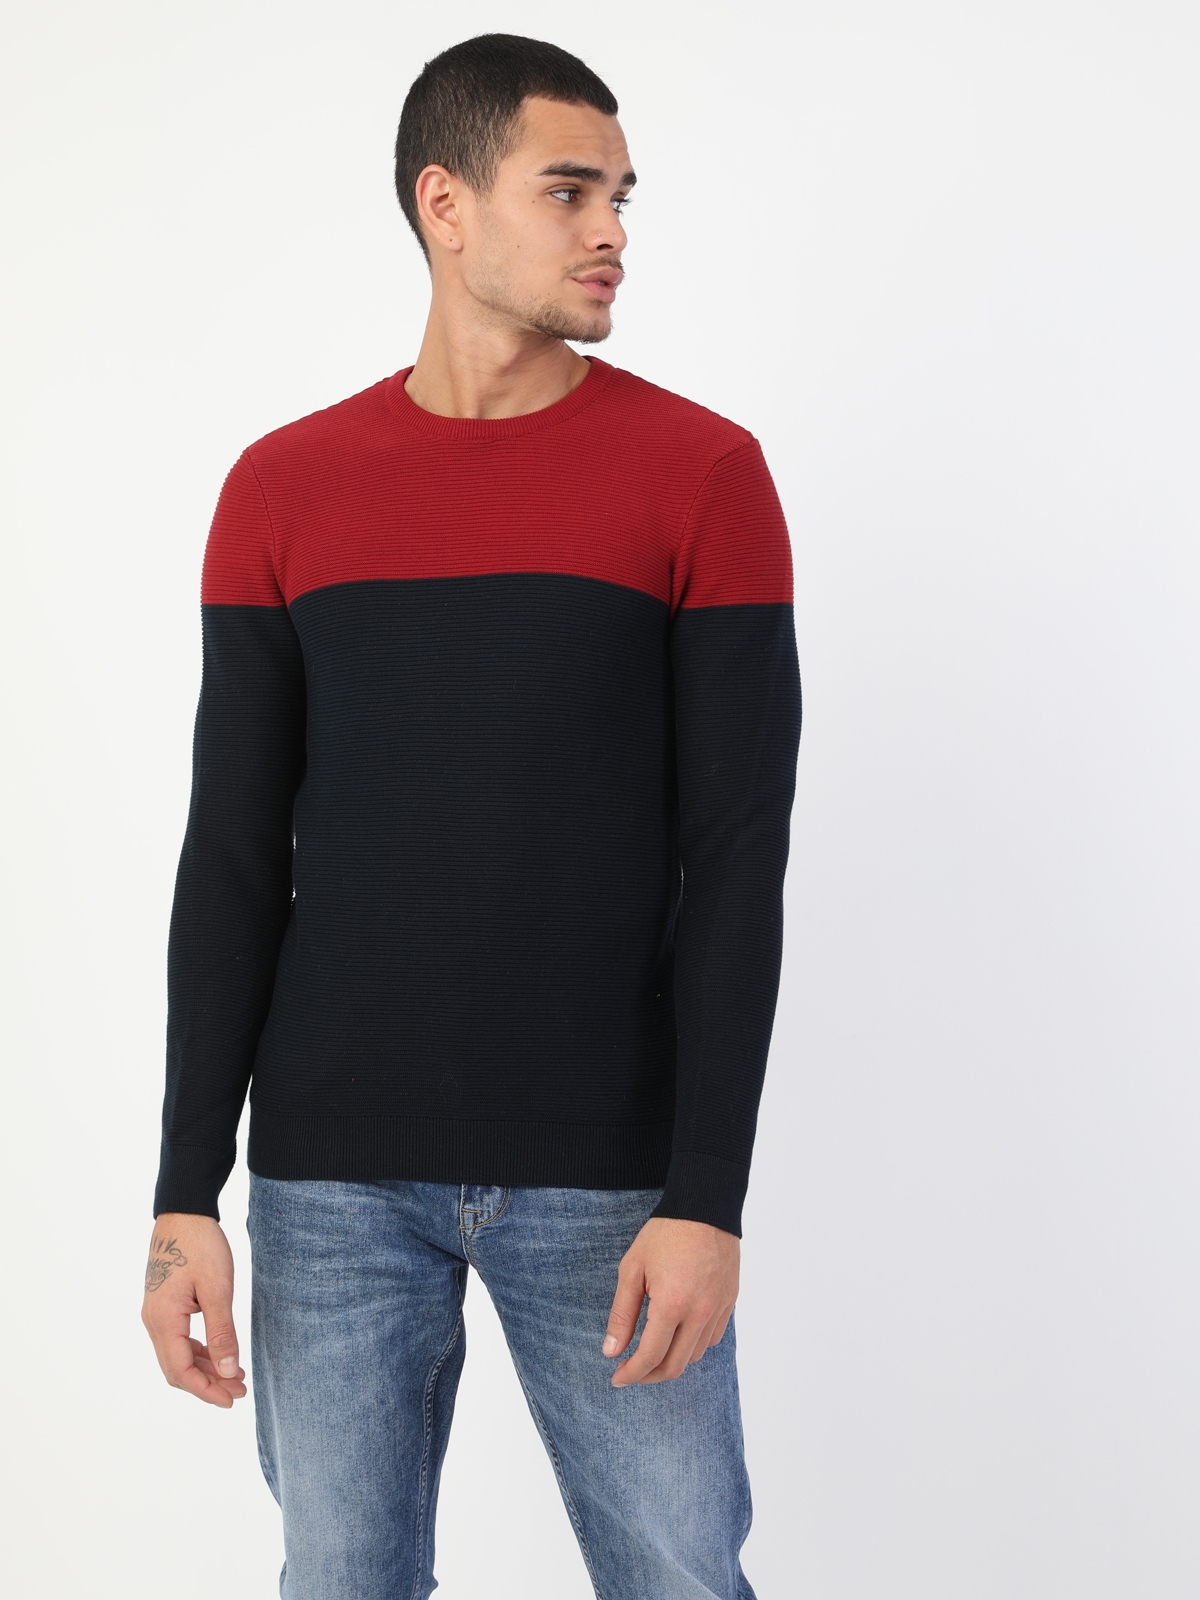 Colins Bordeaux Men Sweaters. 4